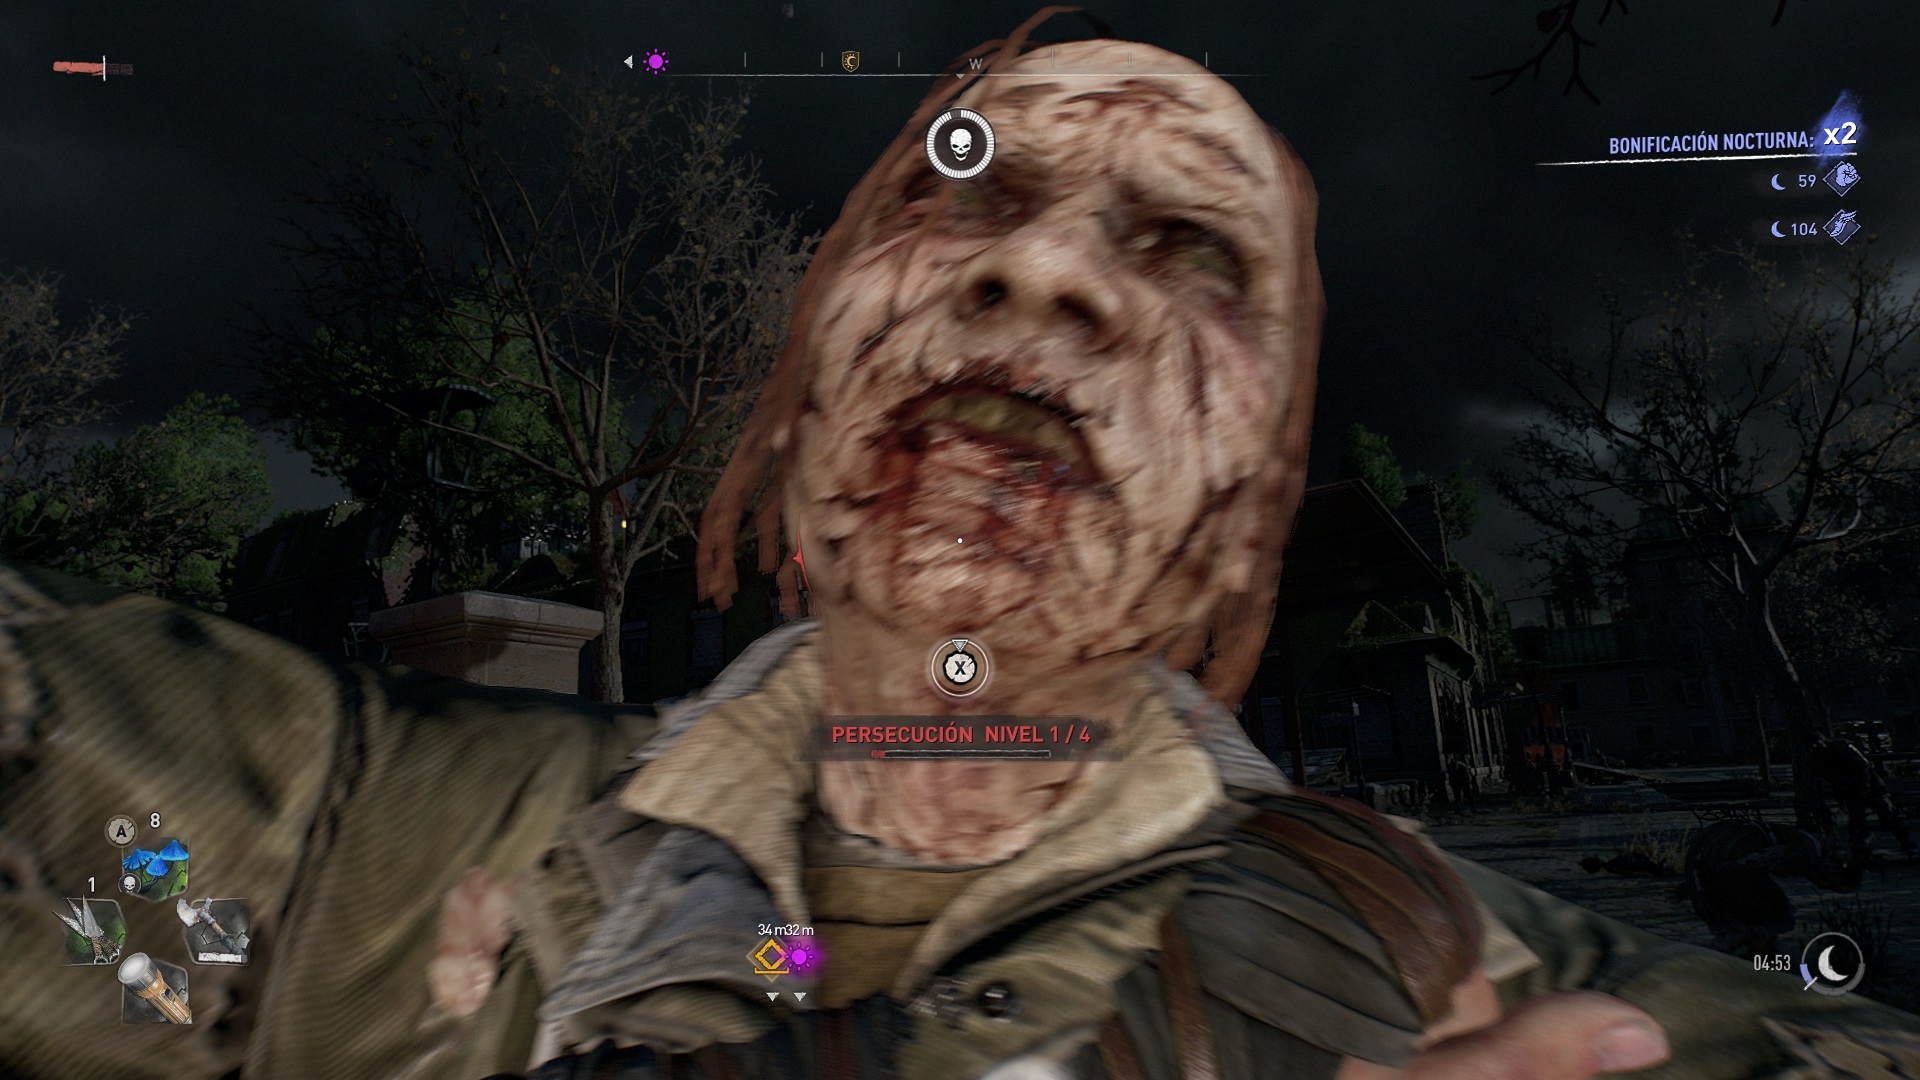 Análisis de Dying Light 2: Stay Human - Analizamos en Xbox Series X el esperado Dying Light 2 Stay Human. Techland vuelve a bordar su versión del apocalipsis zombie.